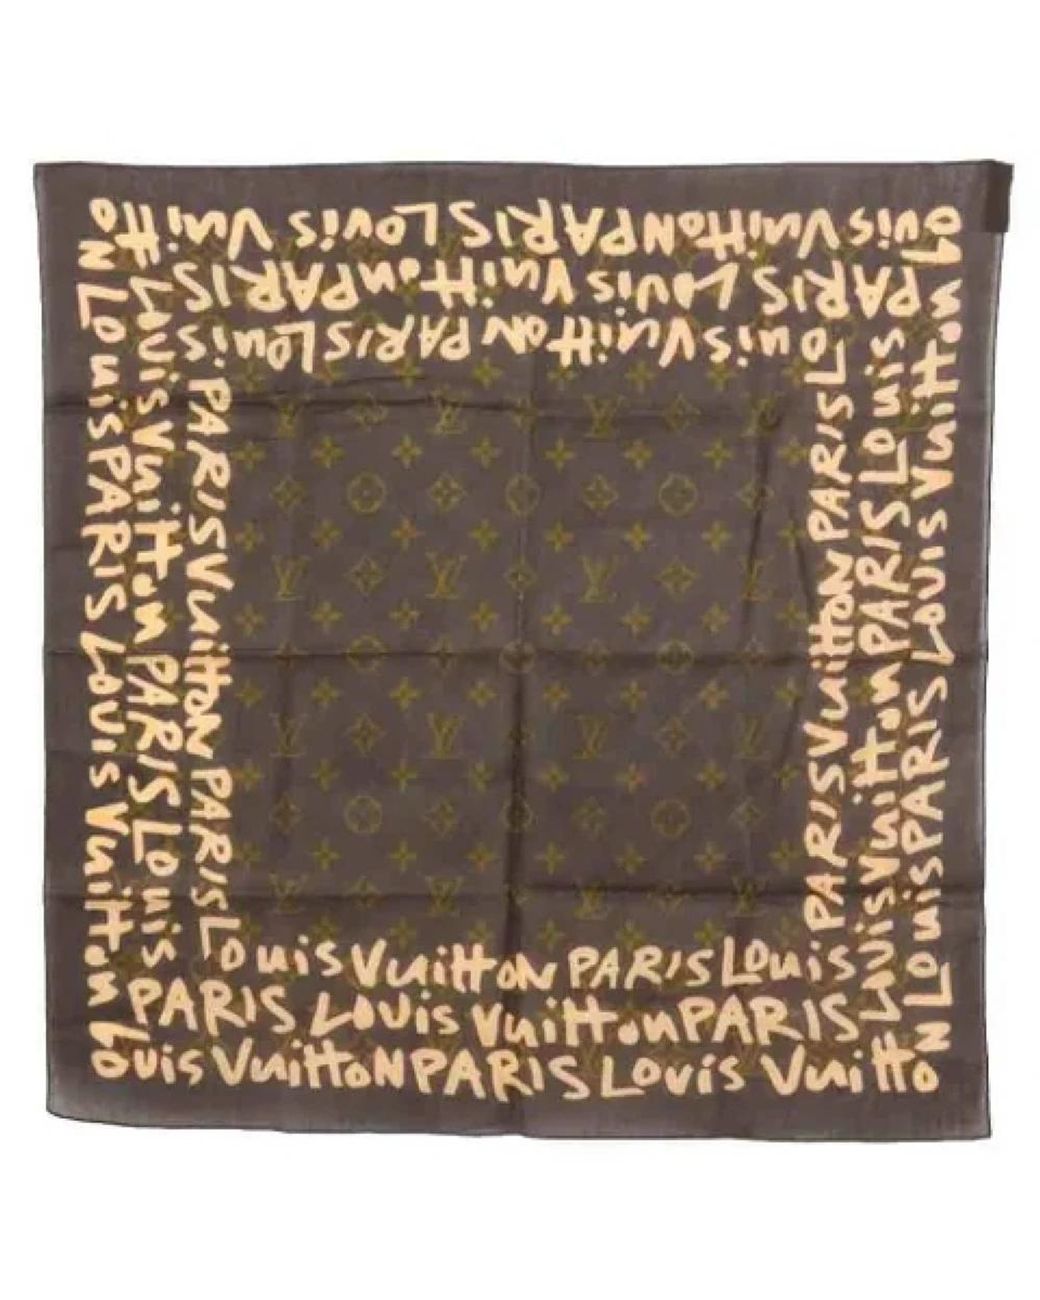 Sciarpa usata di Louis Vuitton in Grigio